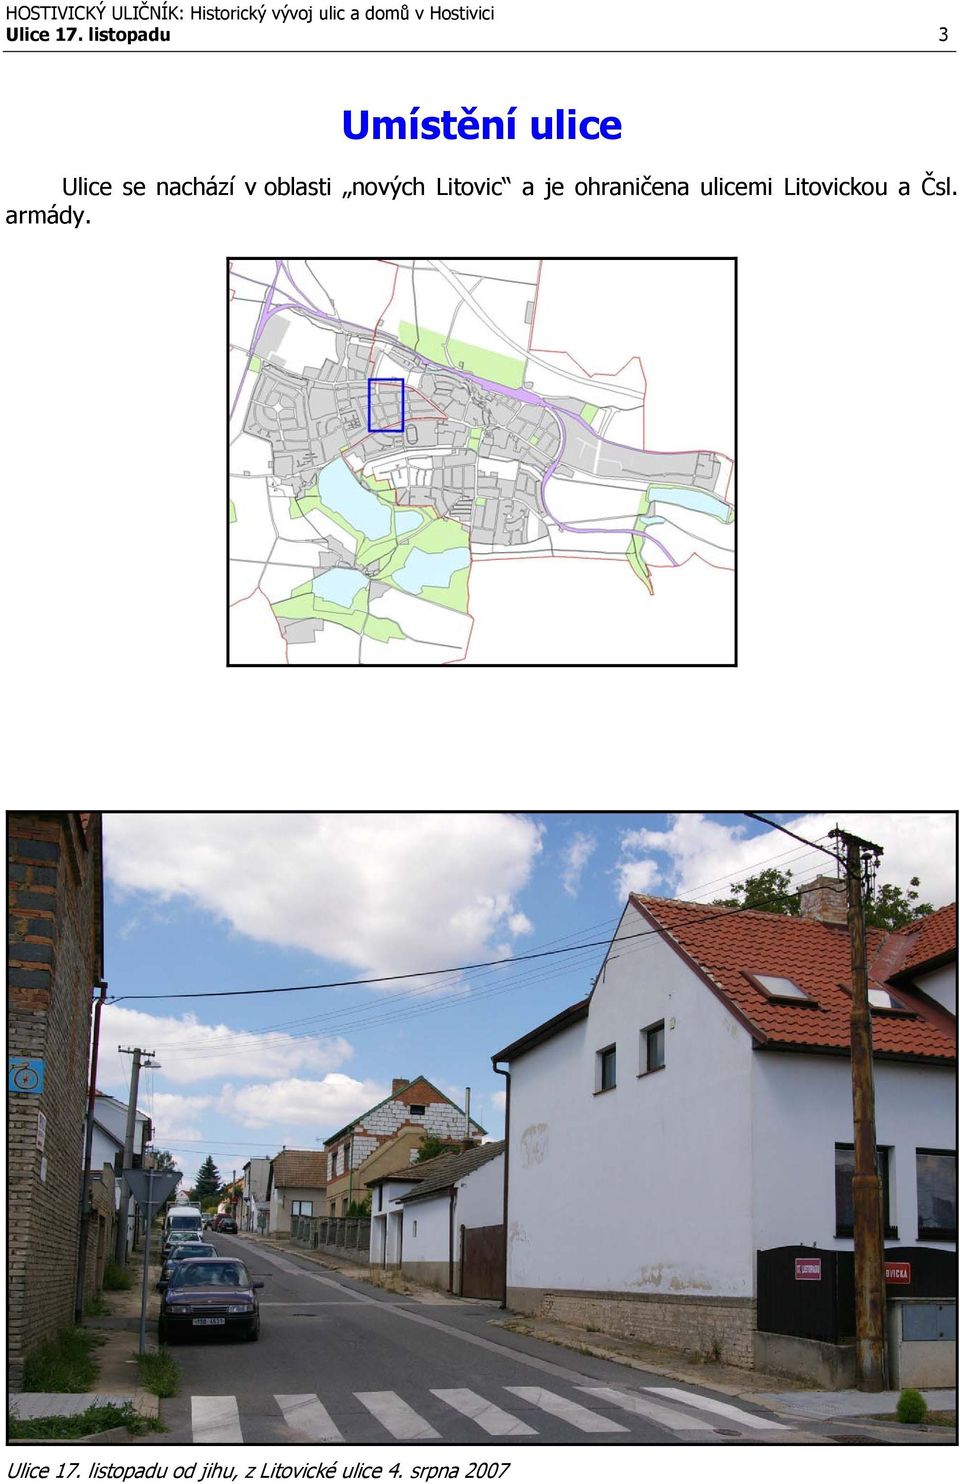 oblasti nových Litovic a je ohraničena ulicemi